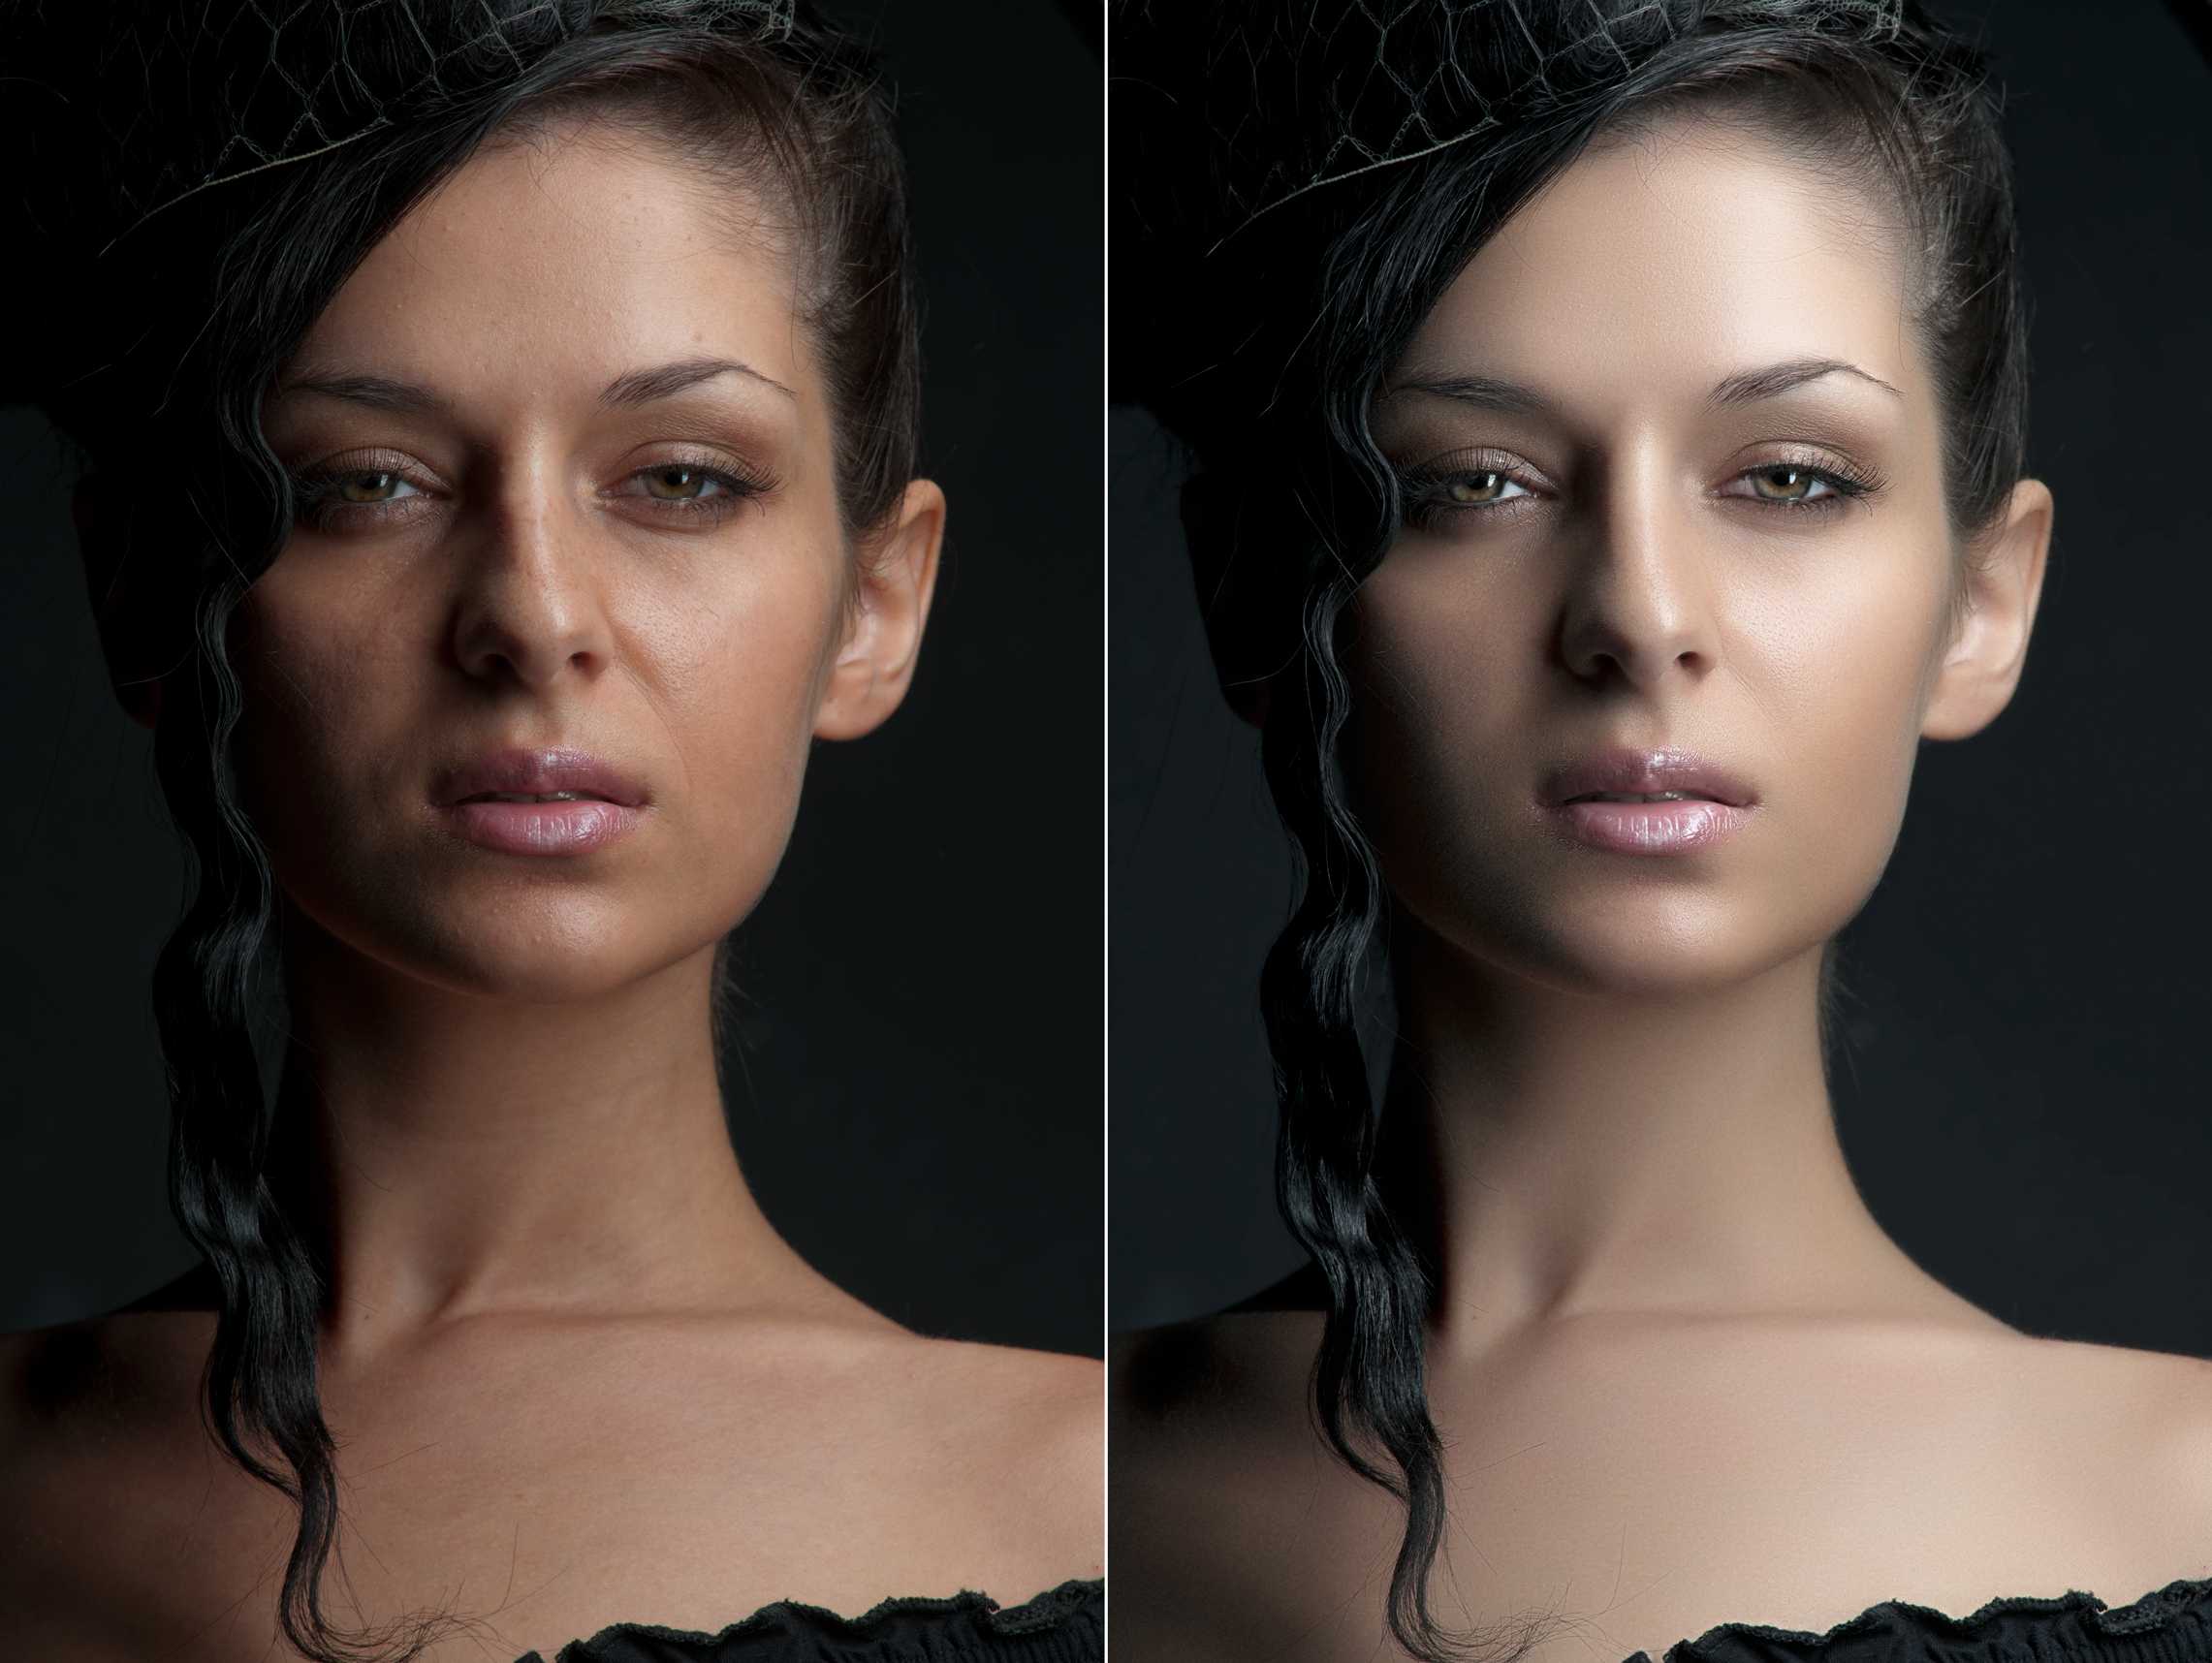 Ретушь женского портрета по технике dodge&burn: метод кривых / съёмка для начинающих / уроки фотографии